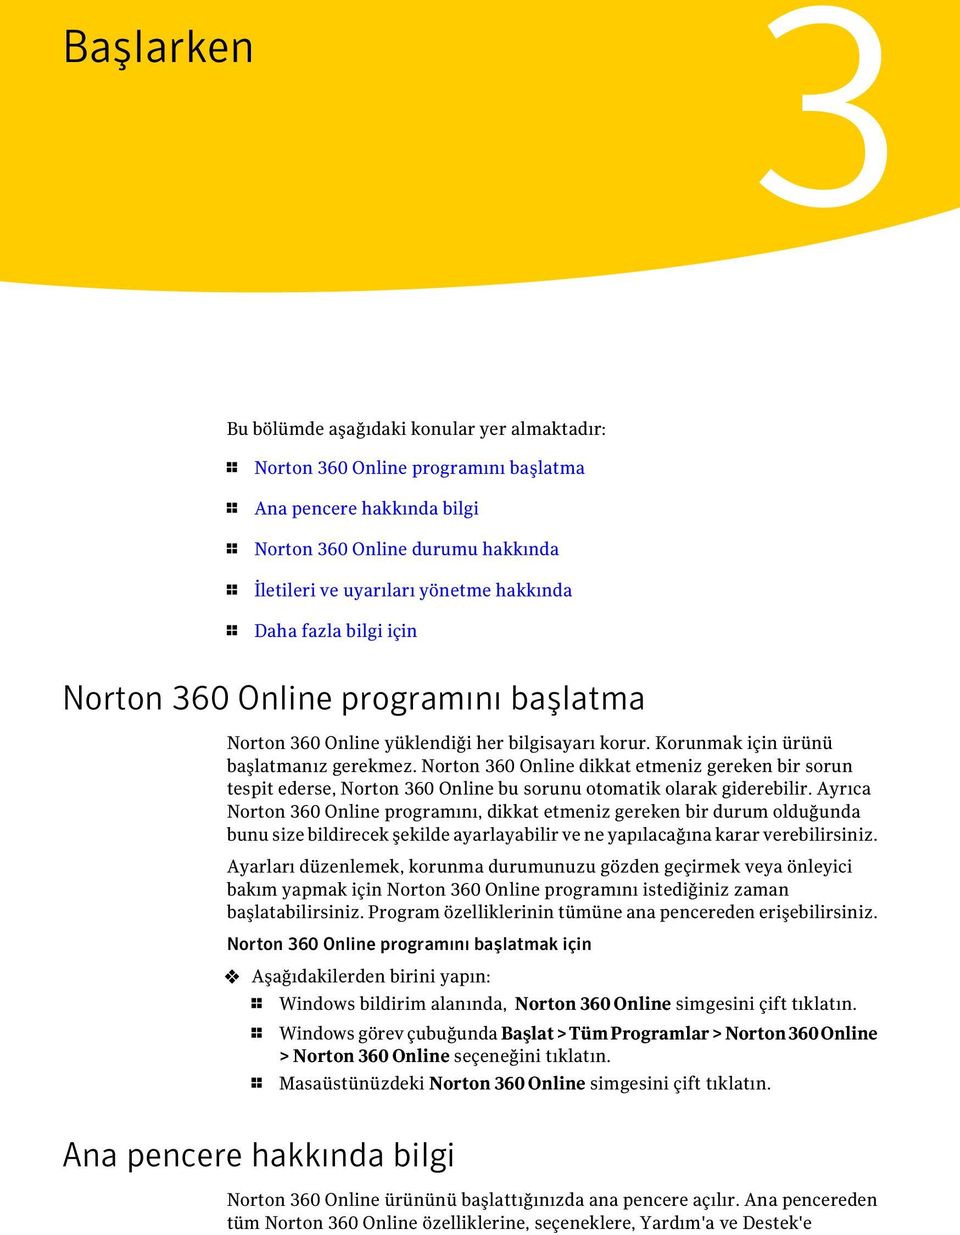 Norton 360 Online dikkat etmeniz gereken bir sorun tespit ederse, Norton 360 Online bu sorunu otomatik olarak giderebilir.